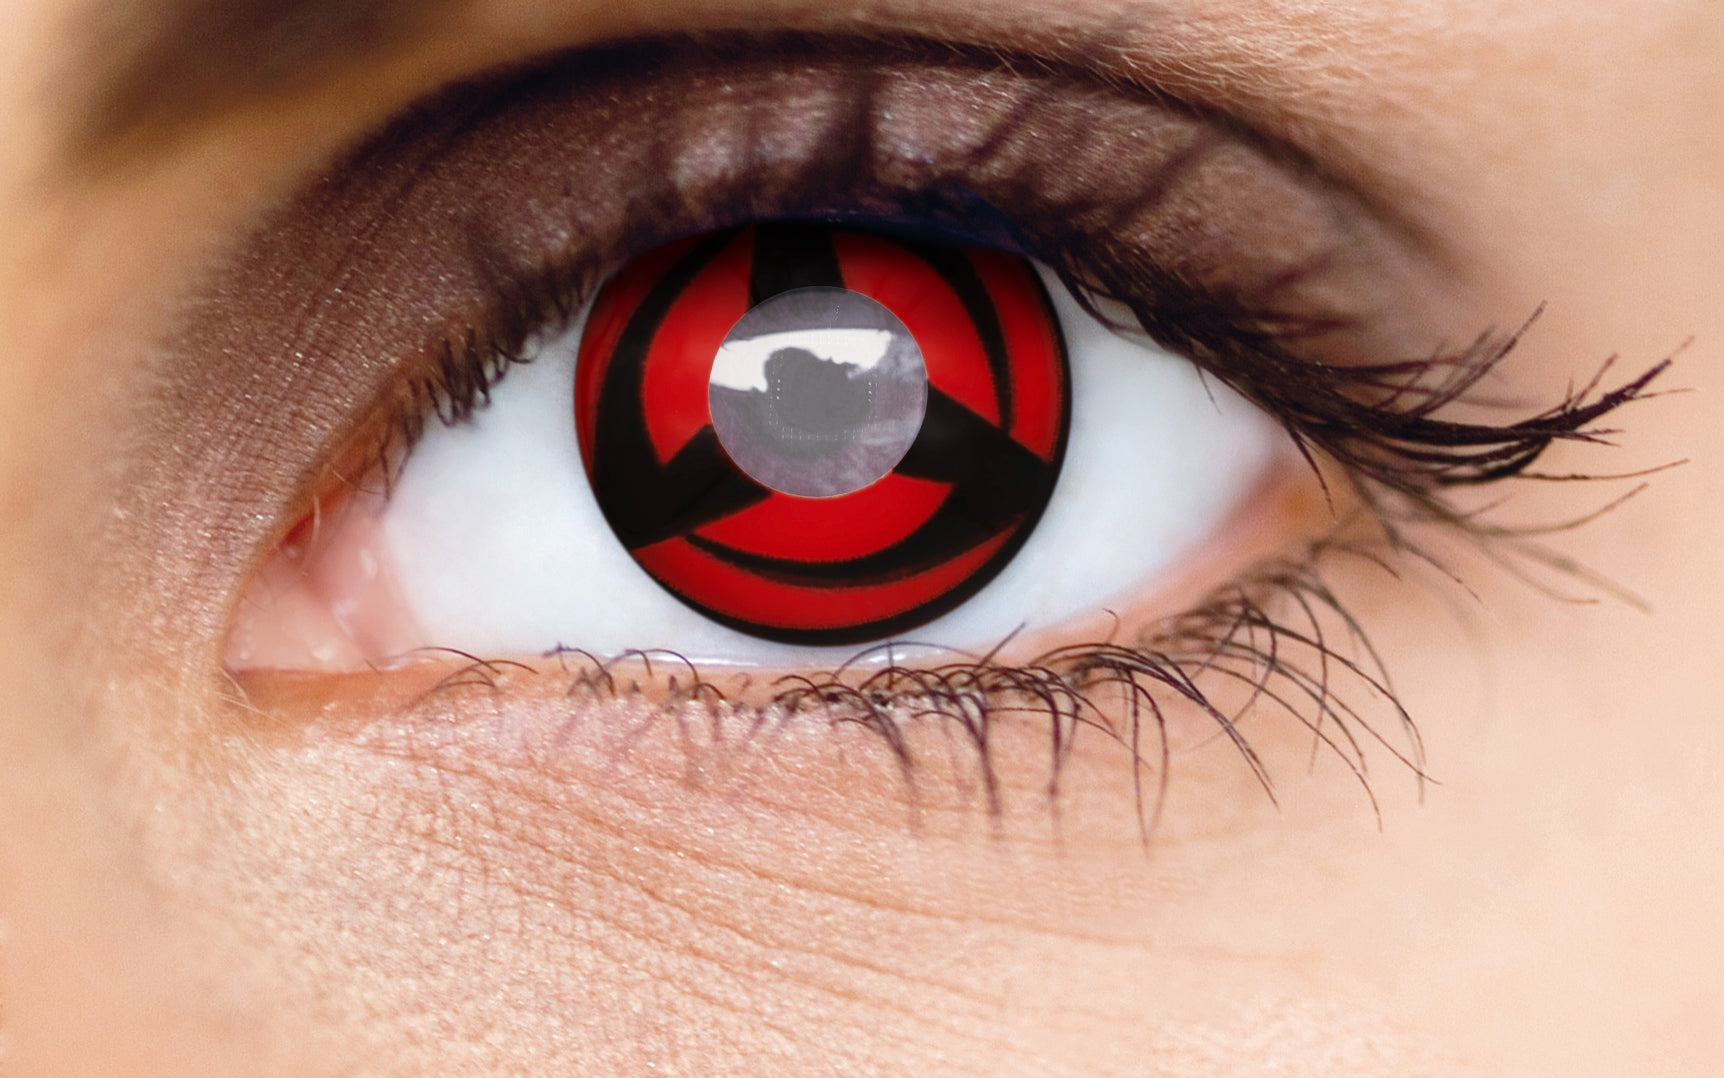 CrazyLab Naruto Kakashi Hatake Mangekyou Sharingan Circle Lenses